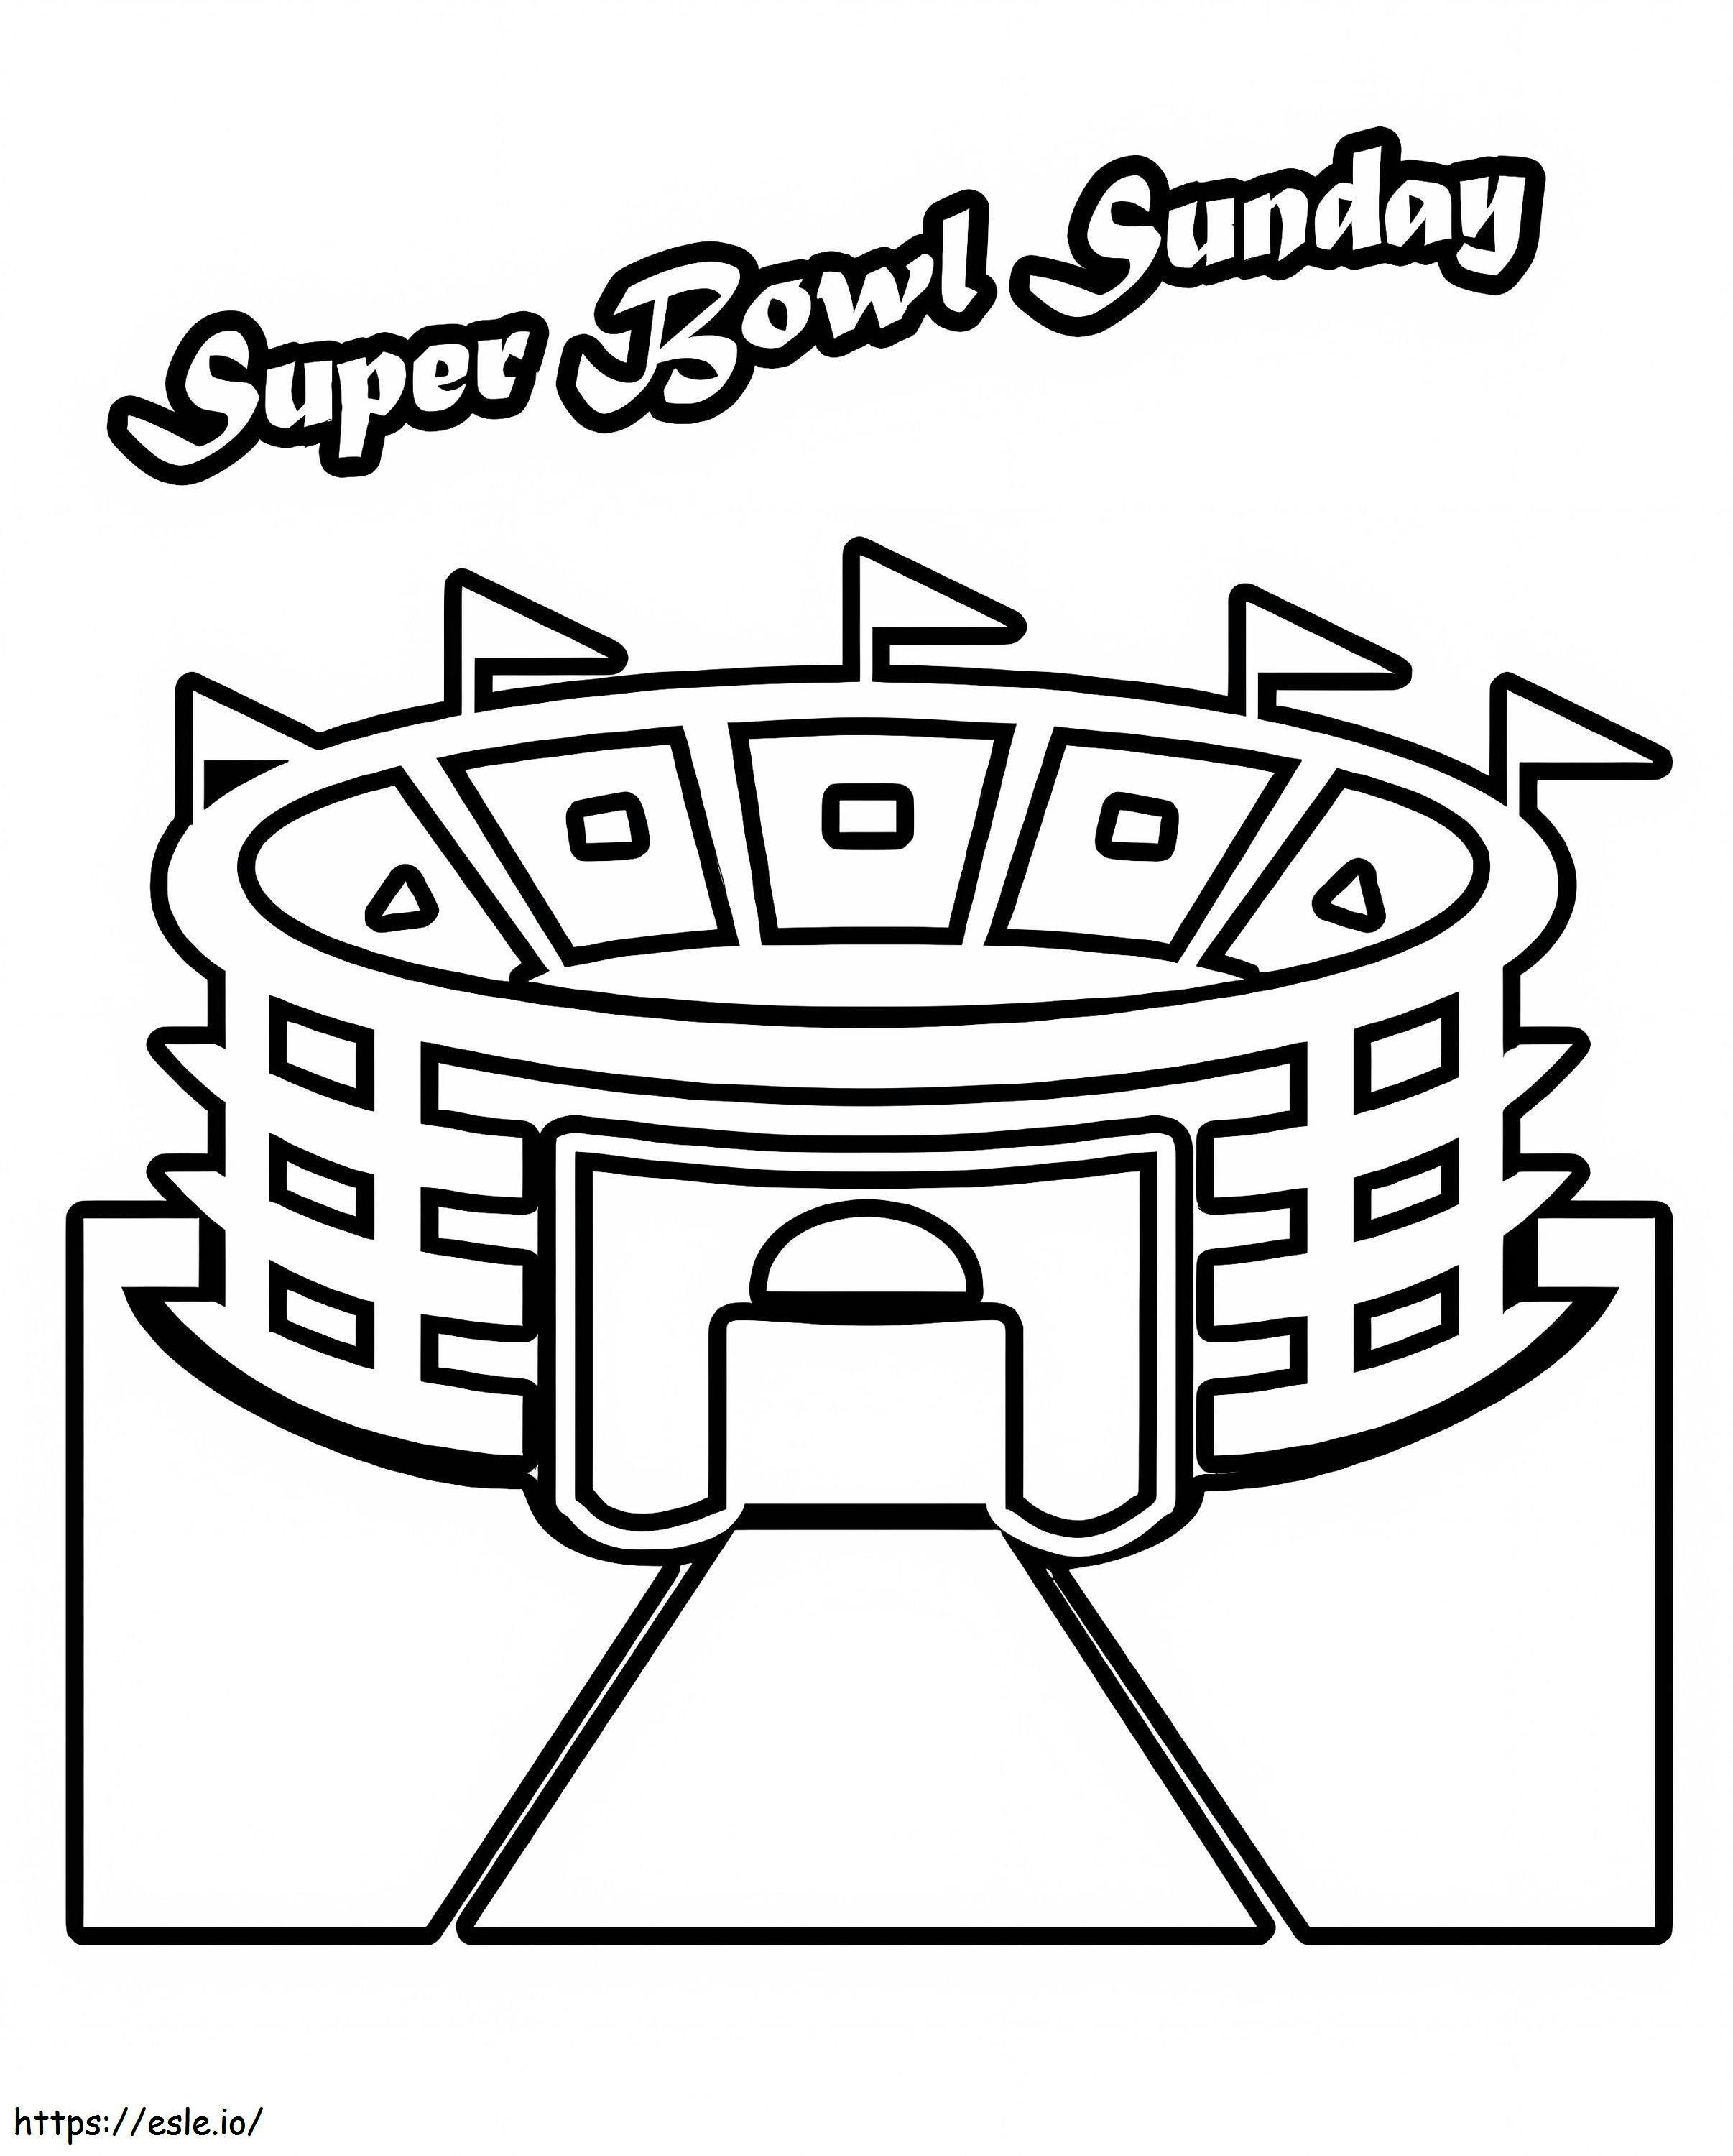 Página para colorir do Super Bowl de domingo para colorir